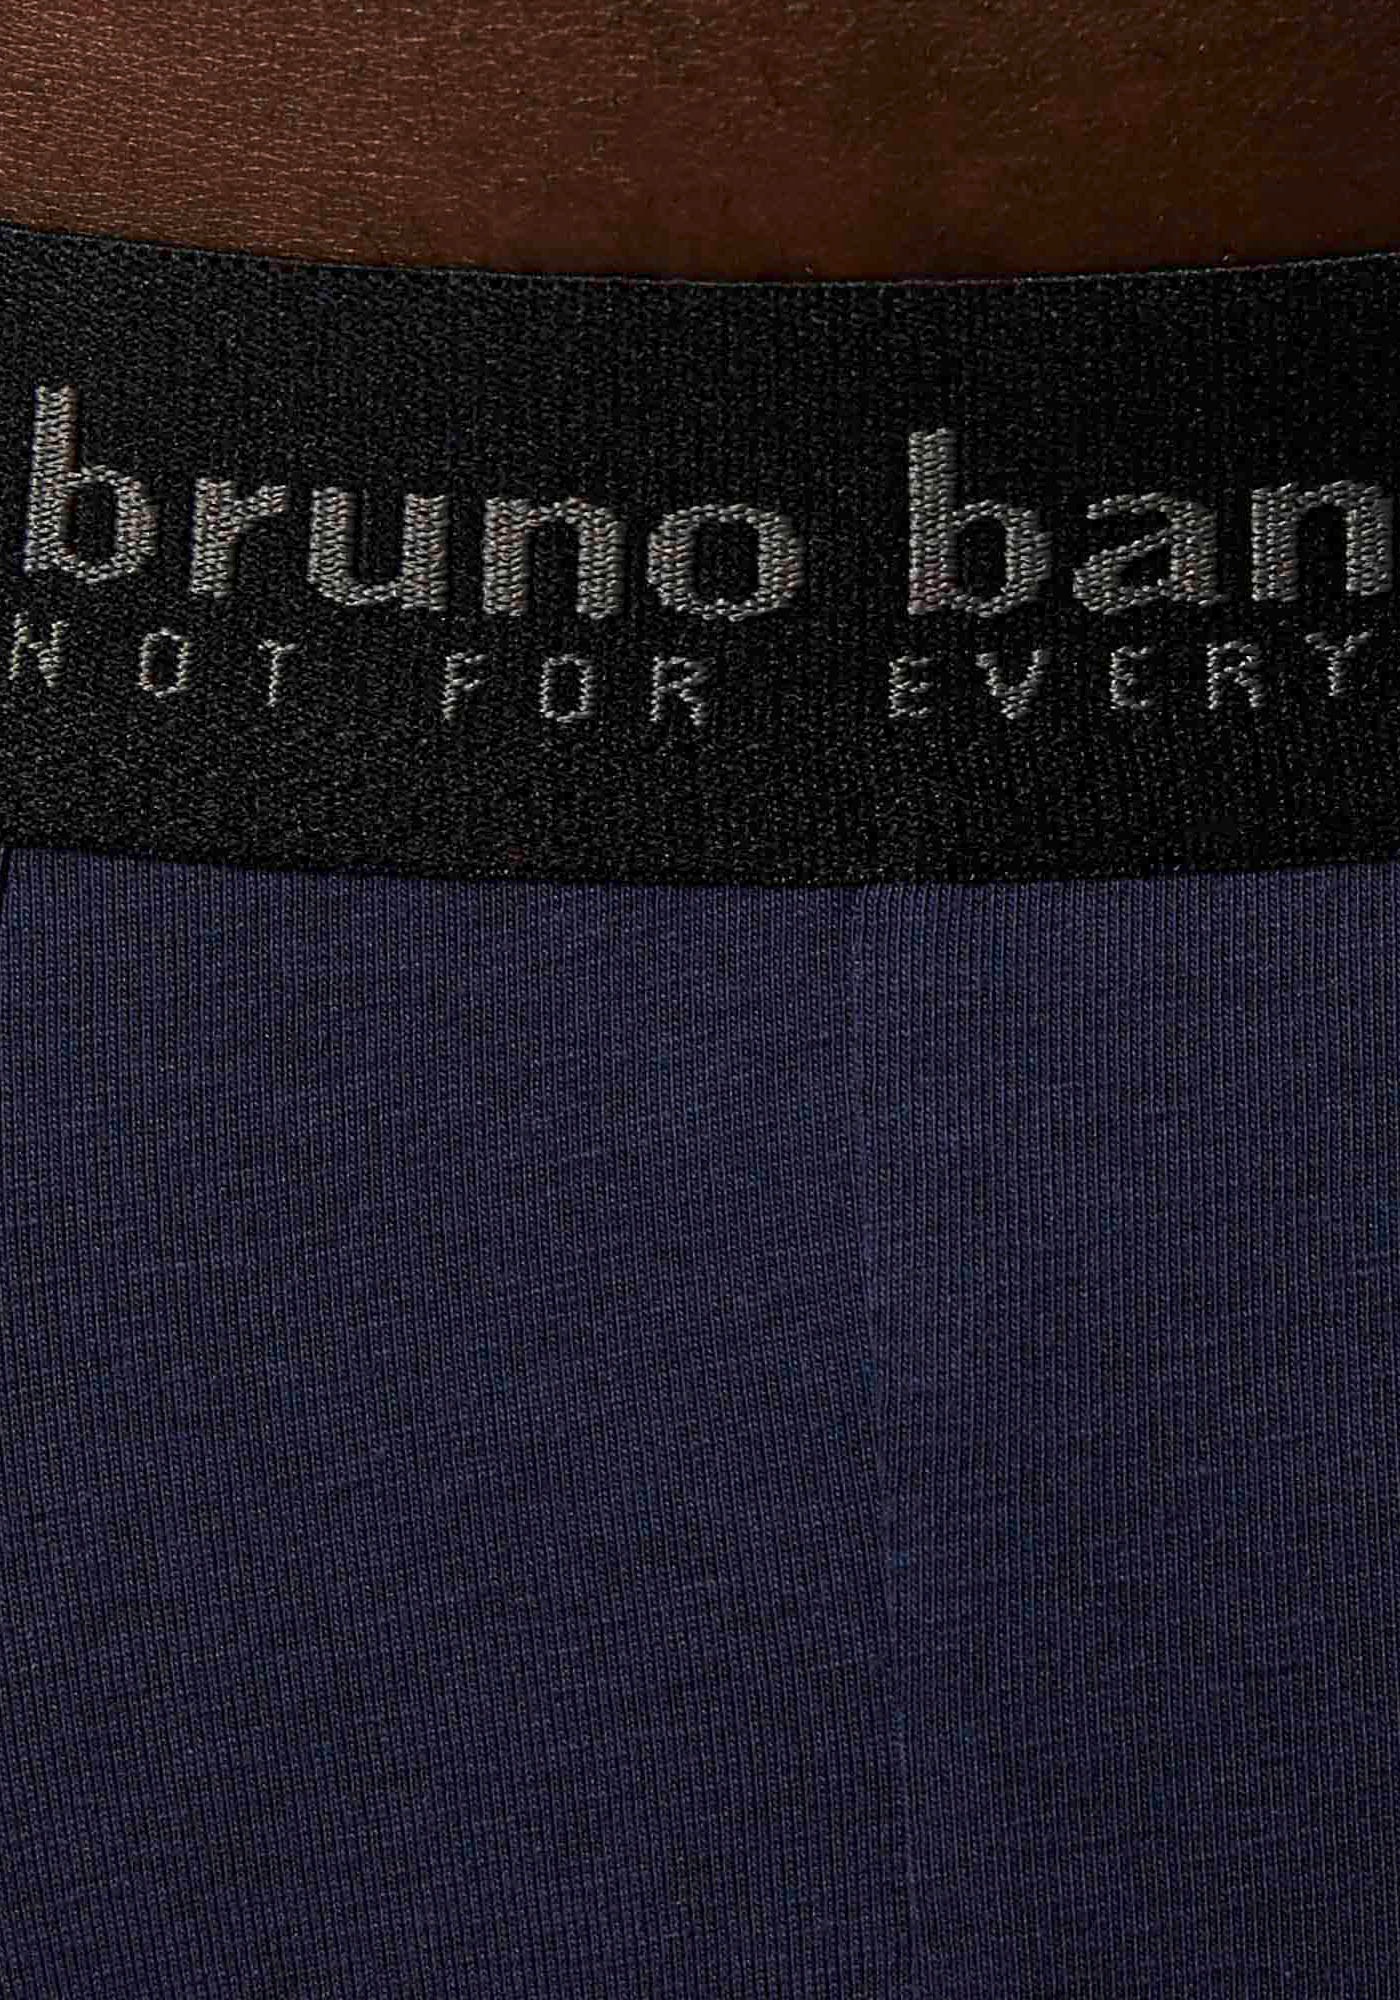 Bruno Banani Boxershorts »Short 3Pack Energy Cotton«, (Packung, 3er-Pack), mit Schriftzug am Bund